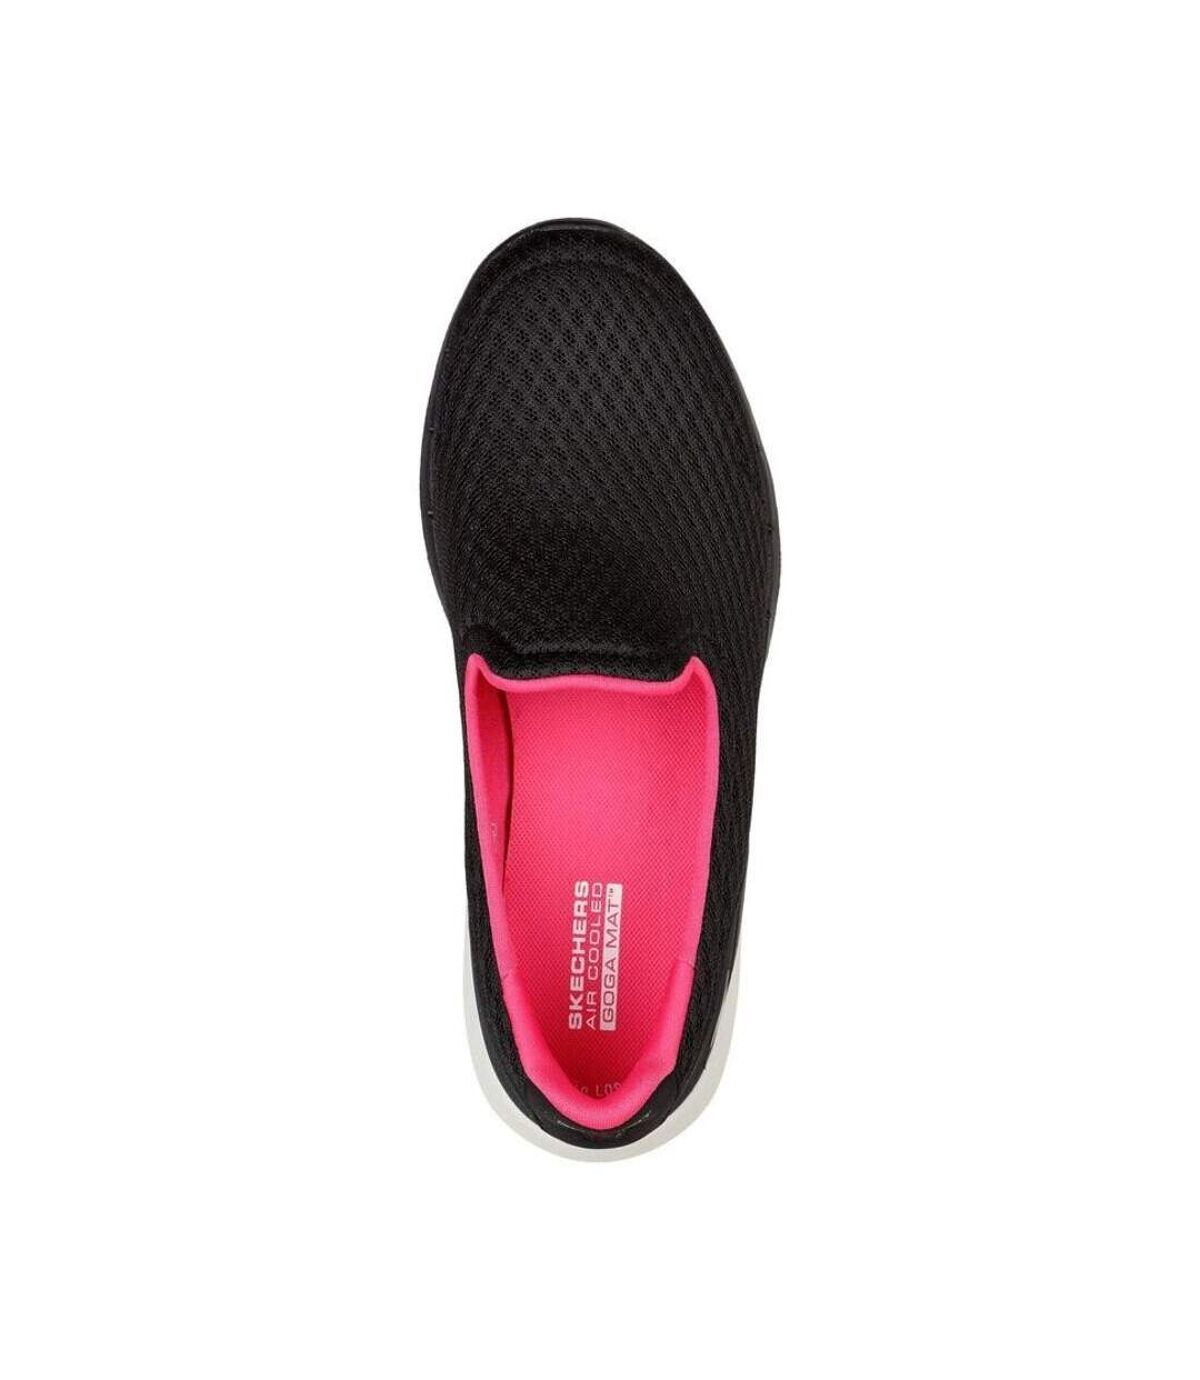 Skechers Womens/Ladies GOwalk 6 Big Splash Walking Shoes (Black/Hot Pink) - UTFS8216